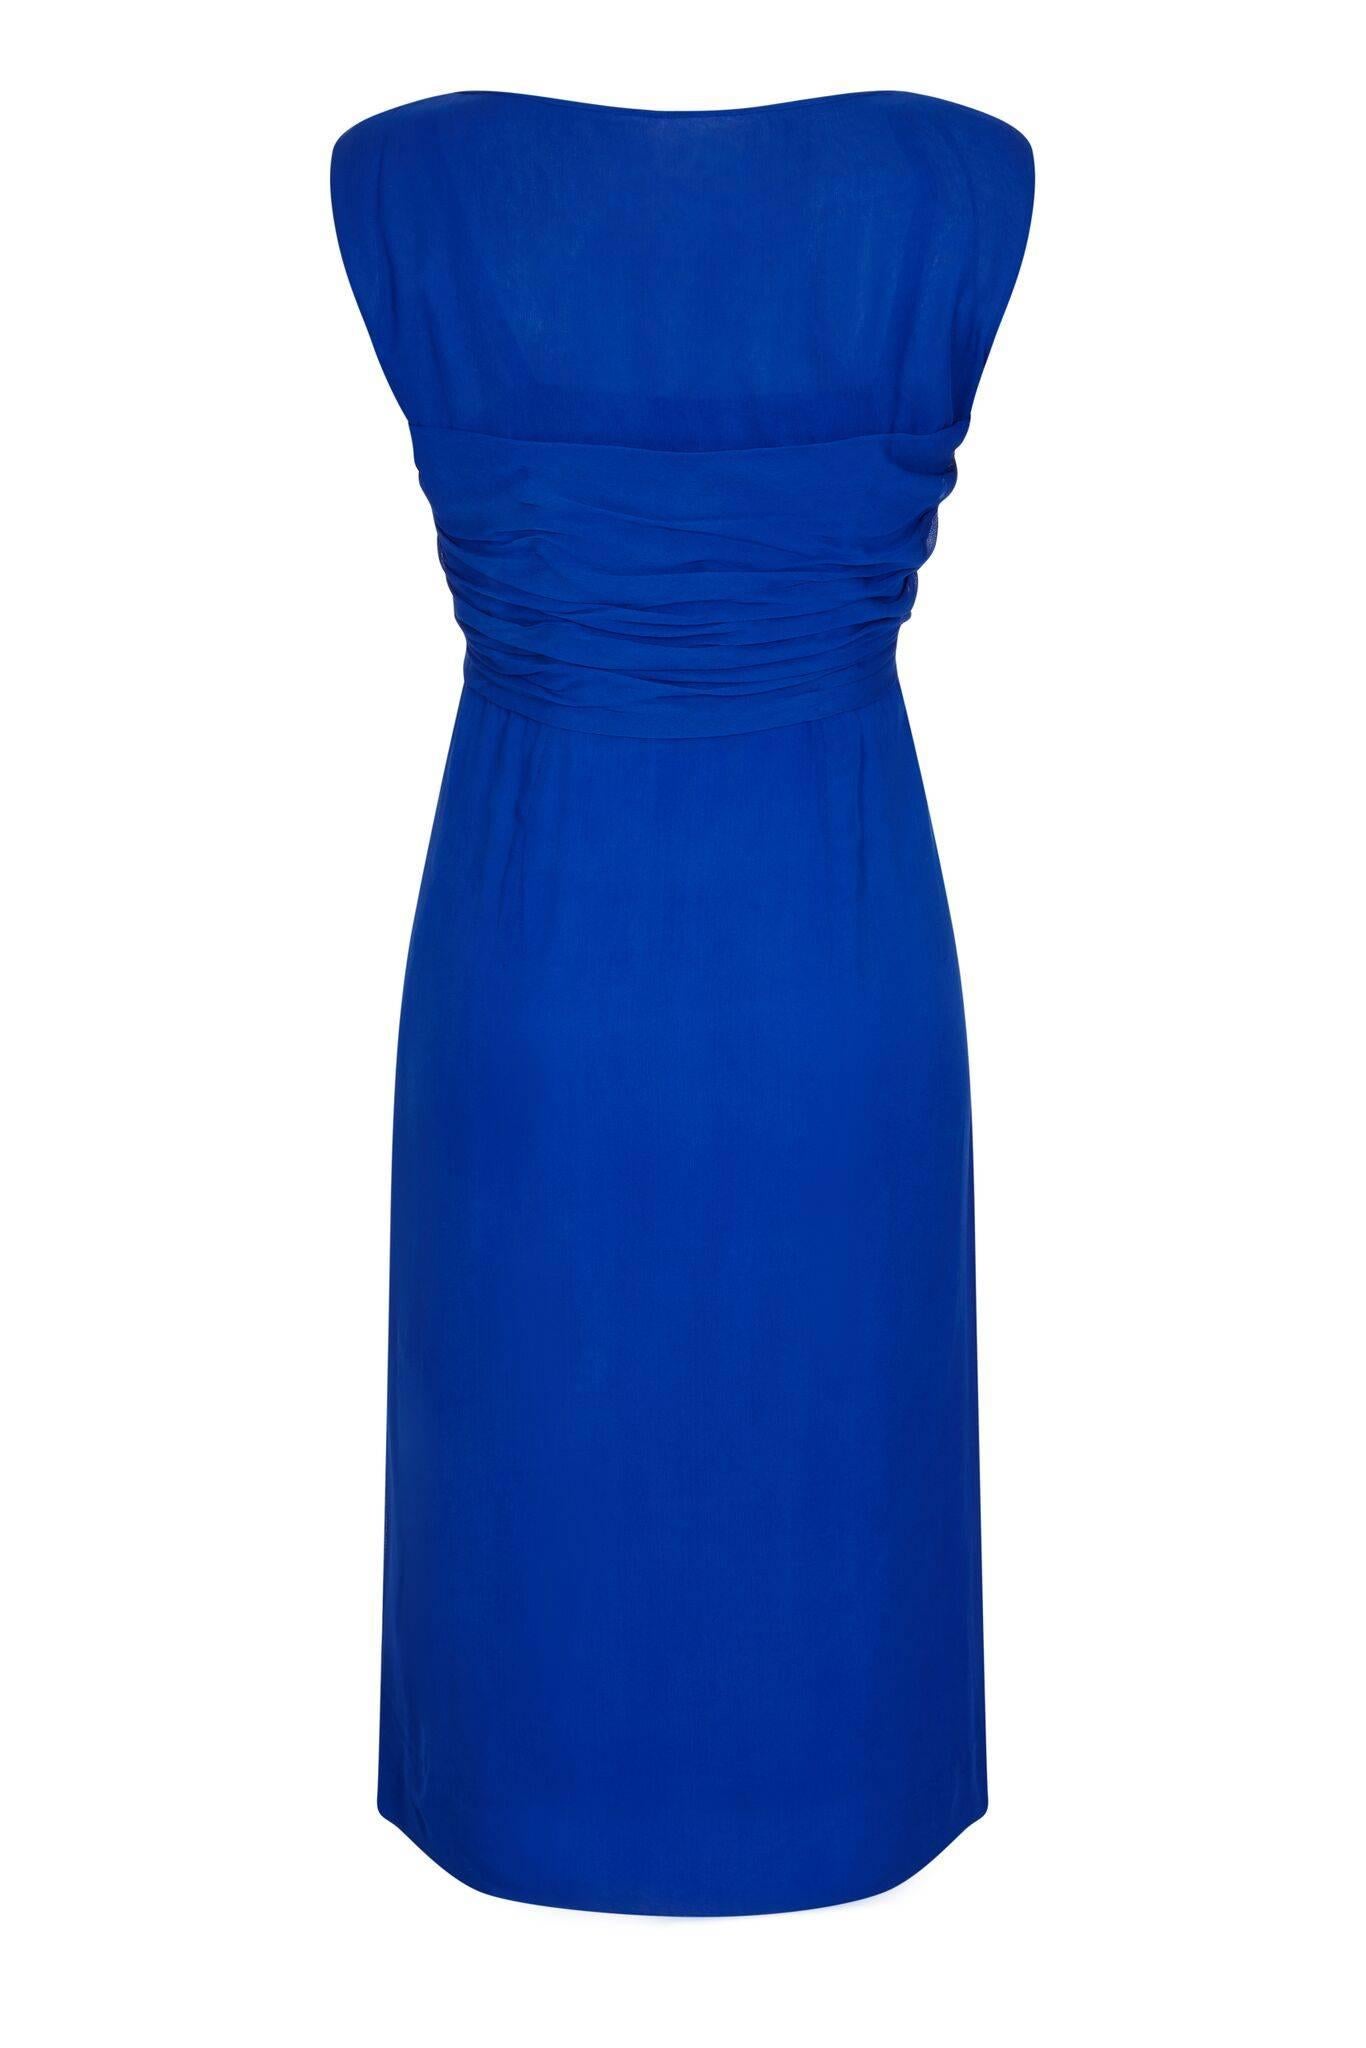 Cette charmante robe du soir en mousseline de soie des années 1950, de couleur bleu cobalt, a été magnifiquement confectionnée selon les normes de la haute couture et se trouve dans un état vintage impeccable. La superposition de mousseline de soie